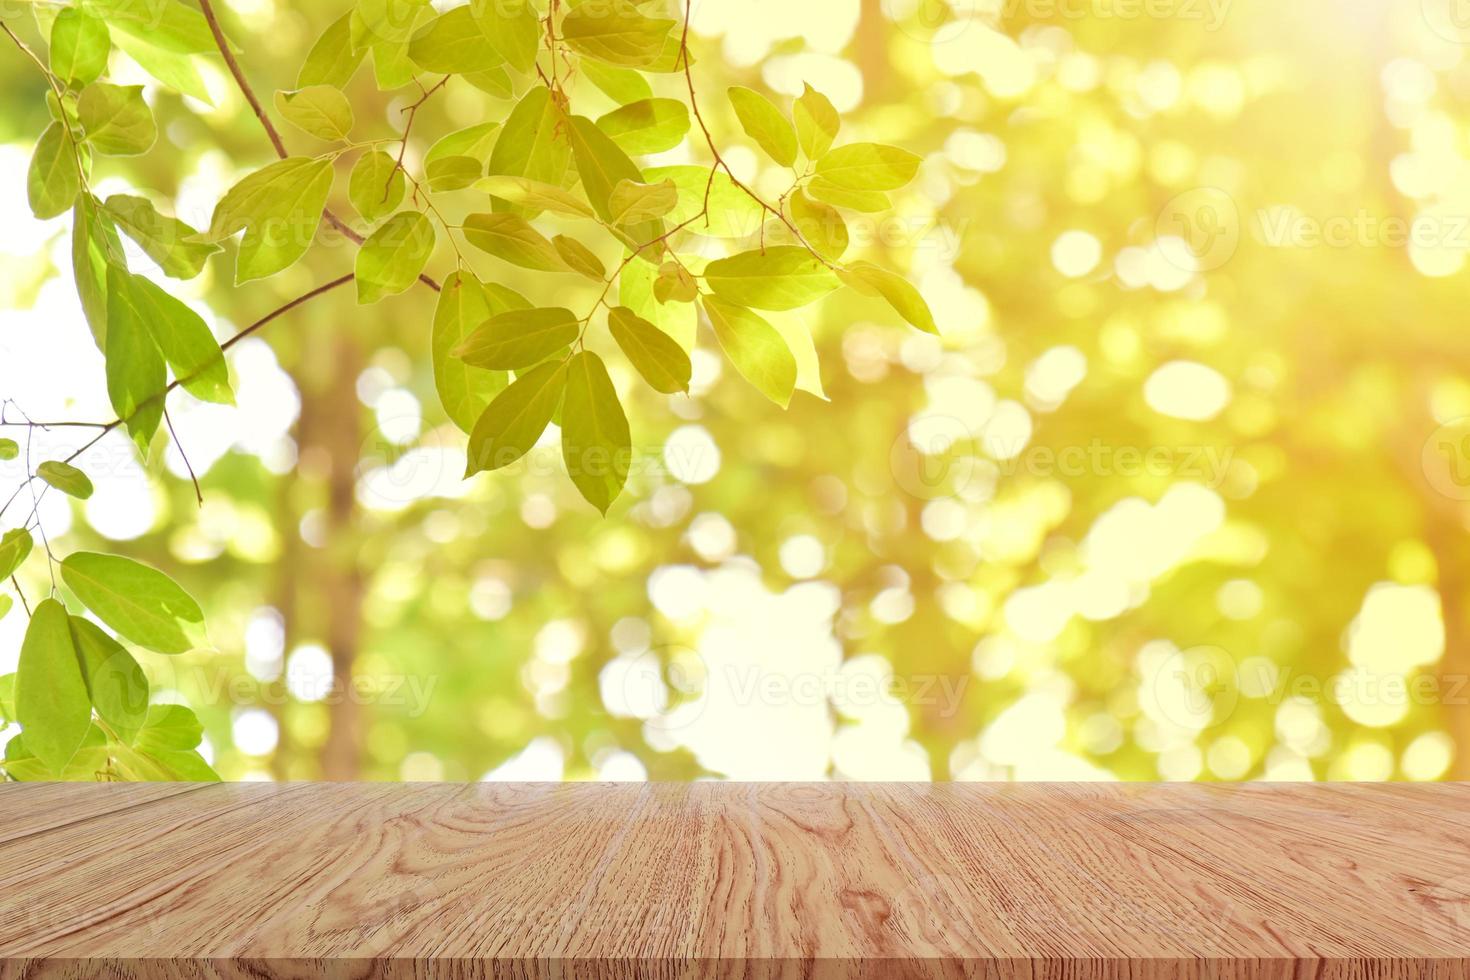 leeg houten tafelblad op vervaging van groene tuin achtergrond. voor uw productweergave of ontwerp belangrijke visuele lay-out foto